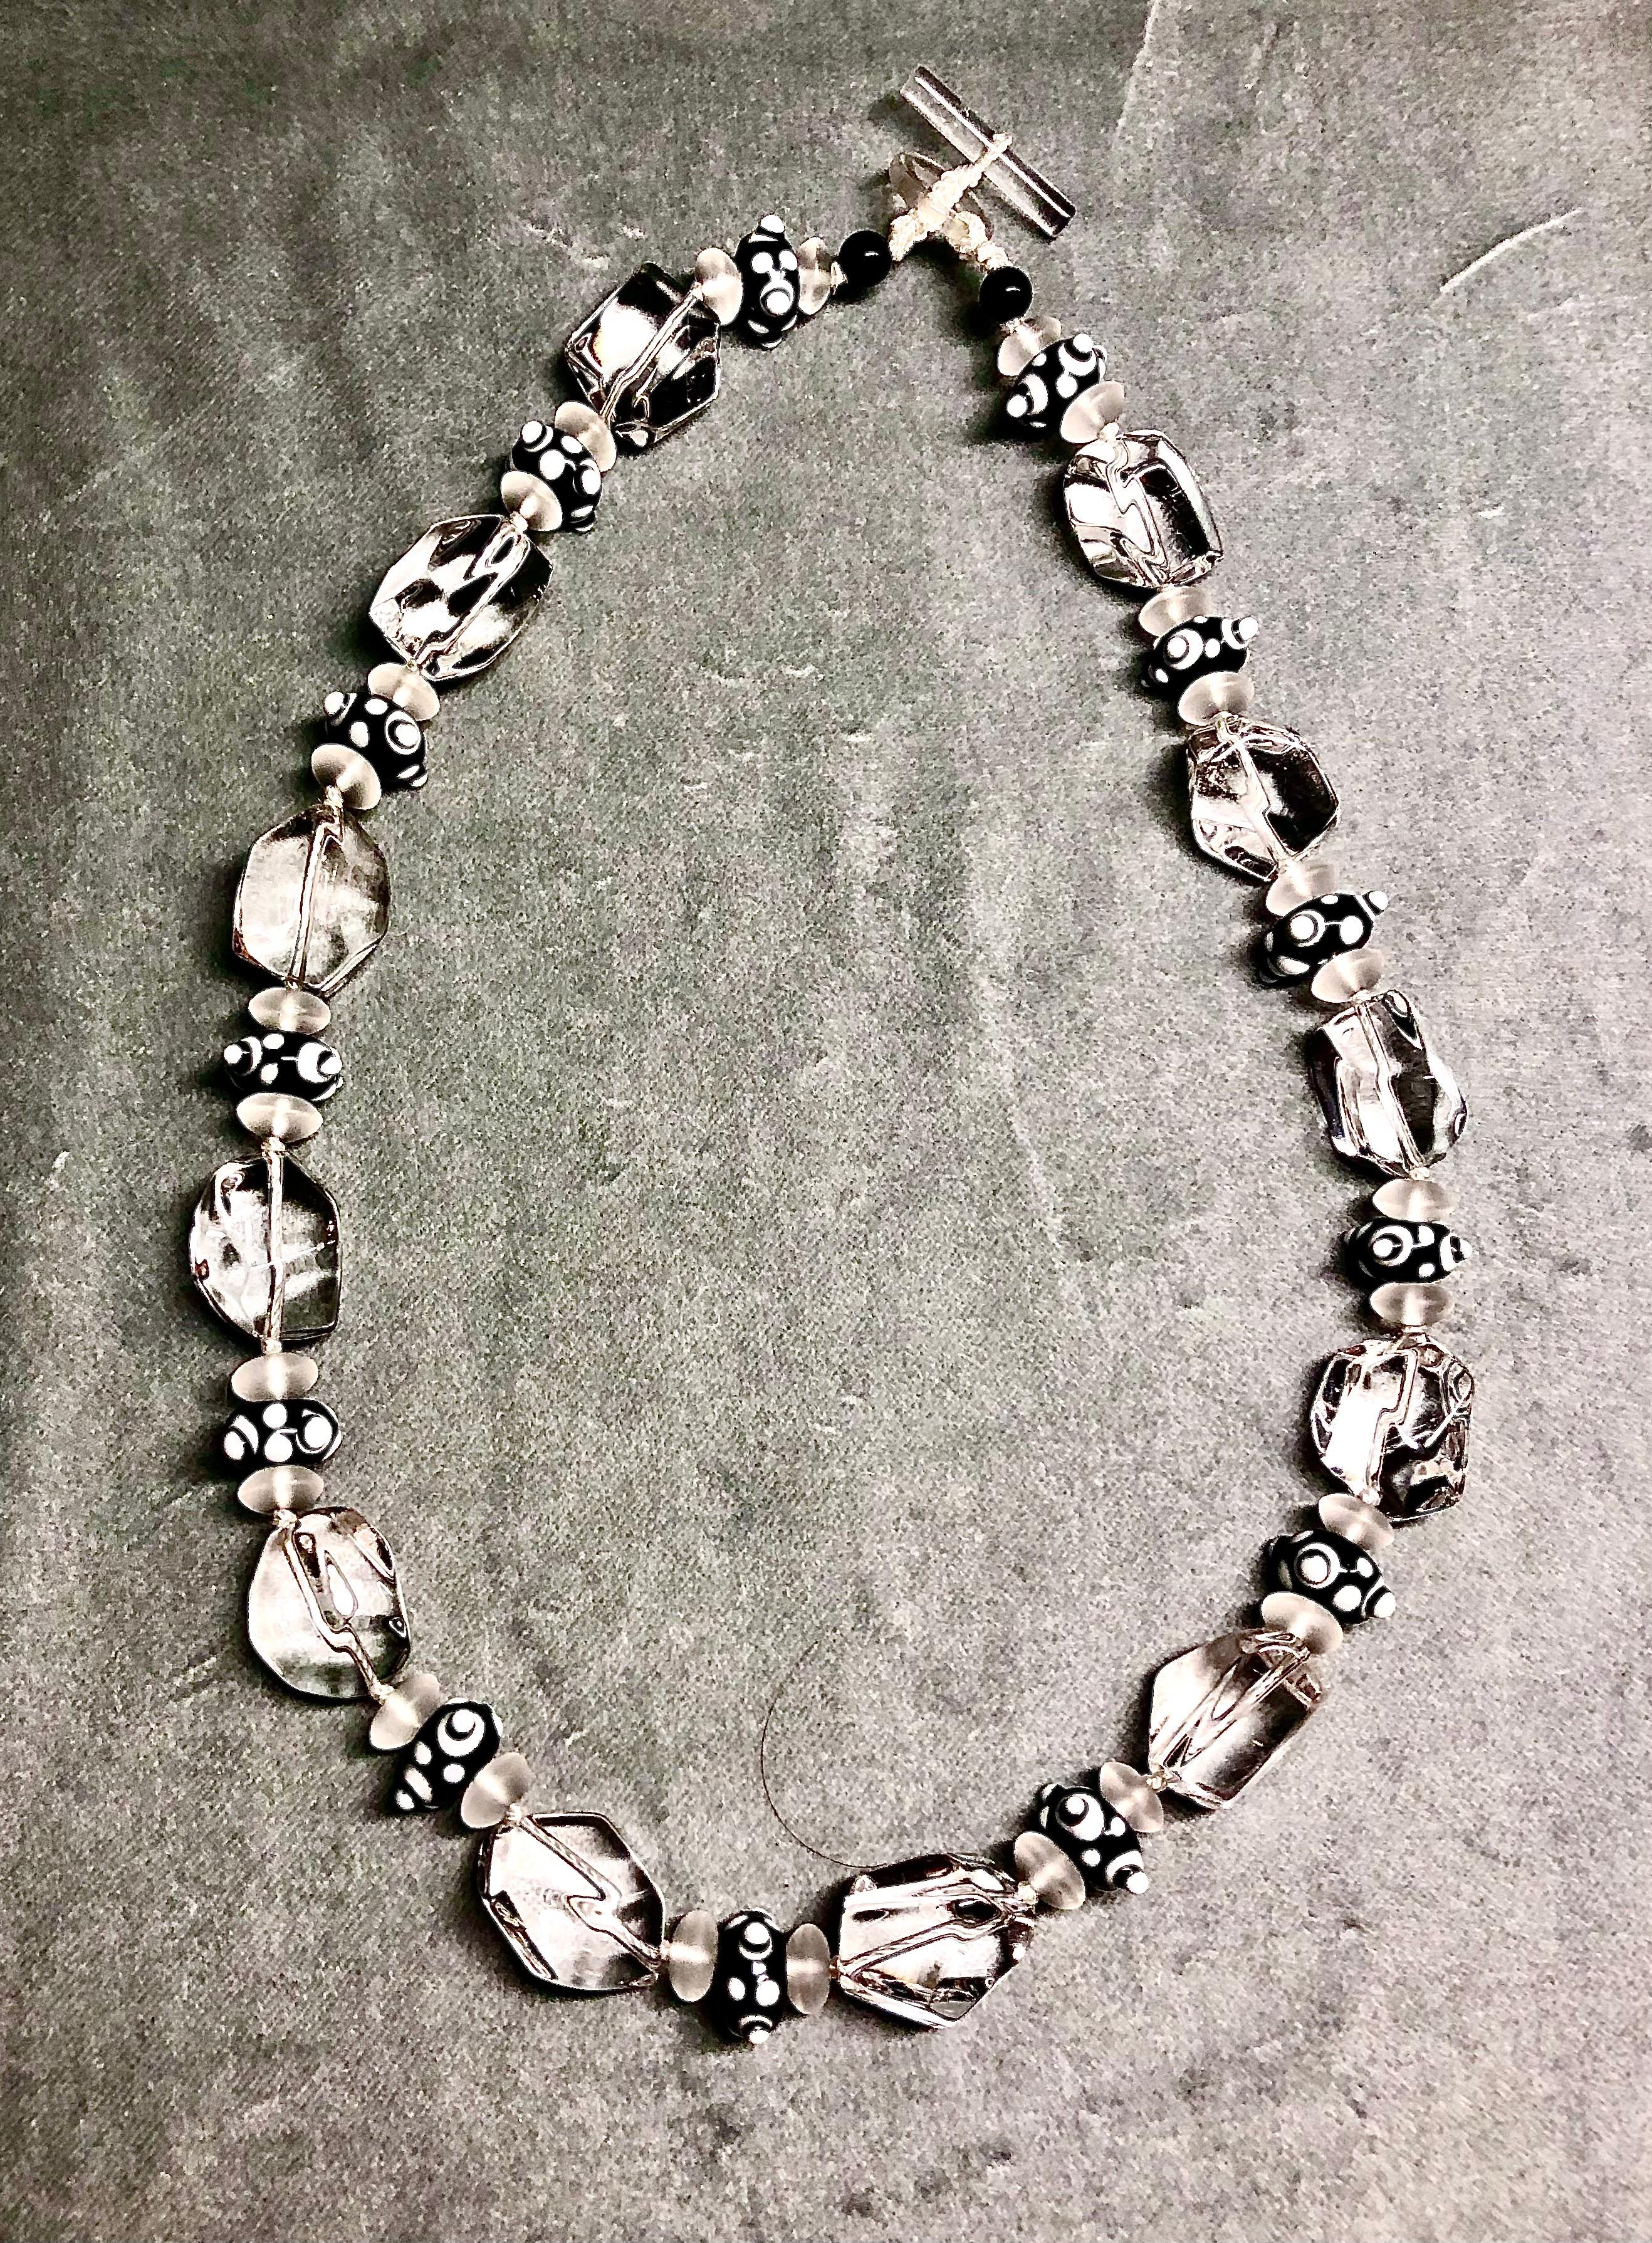 Fabelhaft elegante, aber unaufdringliche Halskette aus sehr großen Bergkristall-Perlen in Trommelform. Zwischen den schimmernden Bergkristall-